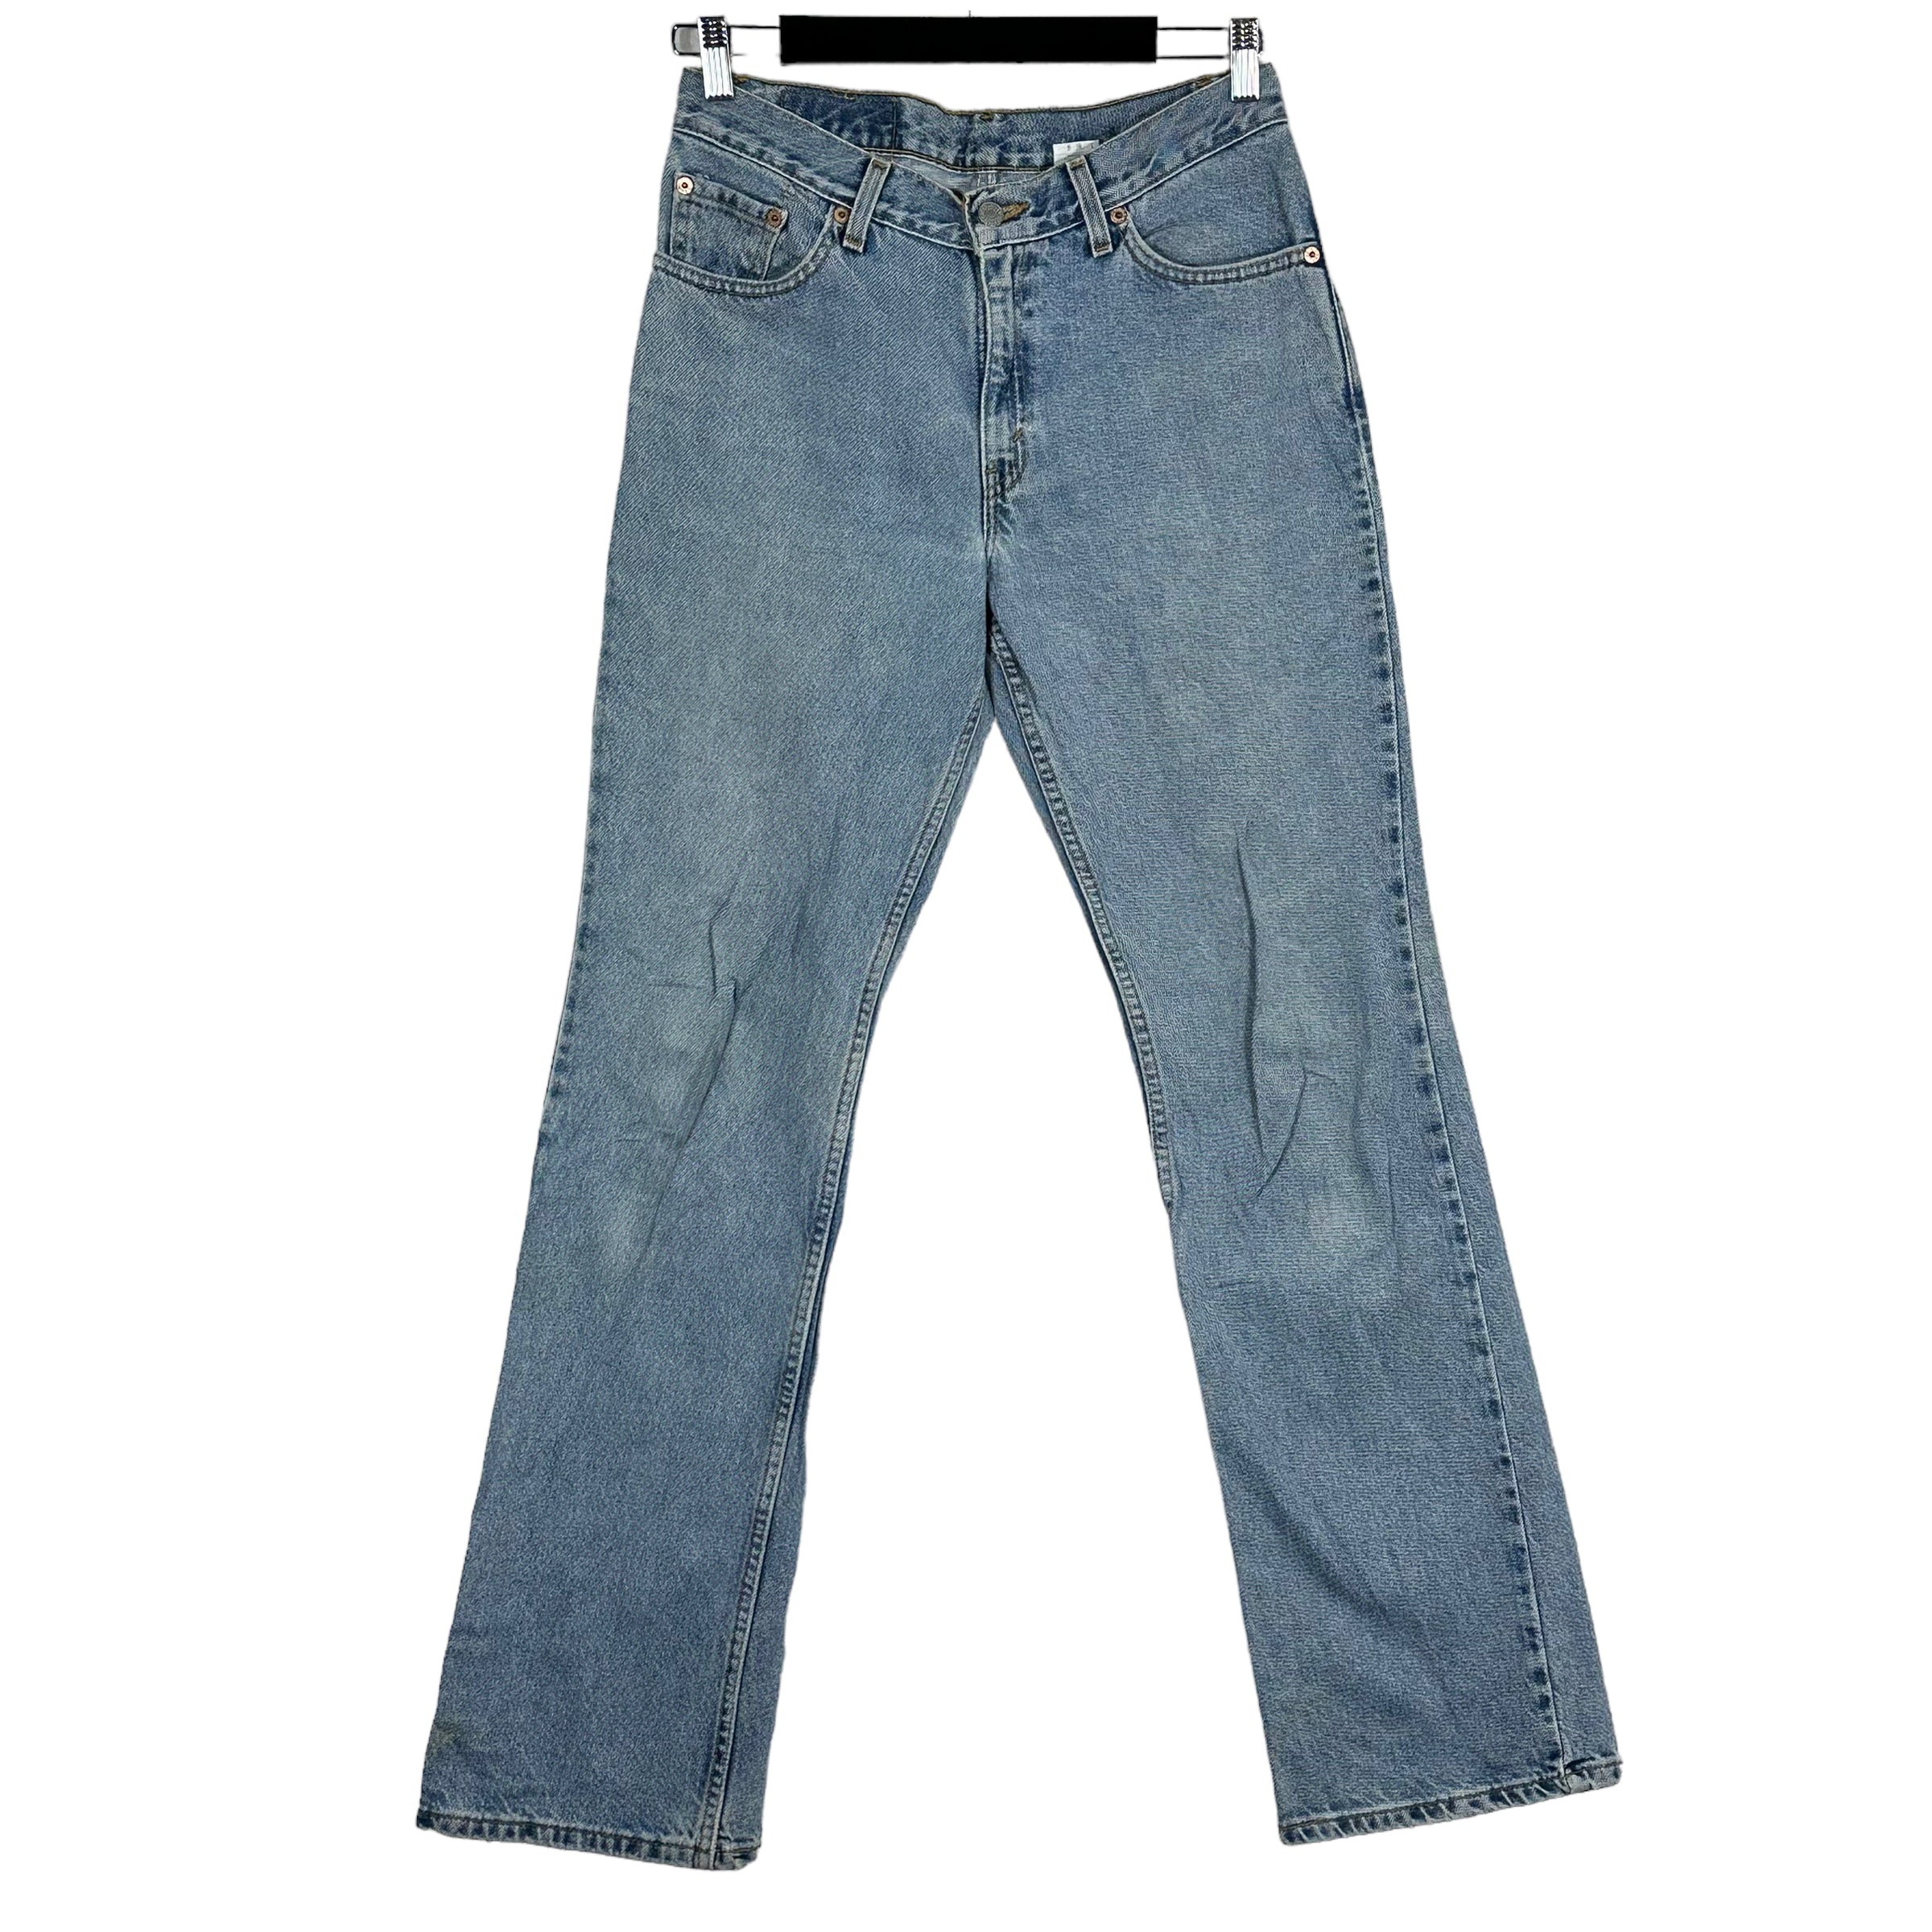 Vintage Levi's 517 Denim Jeans 90s